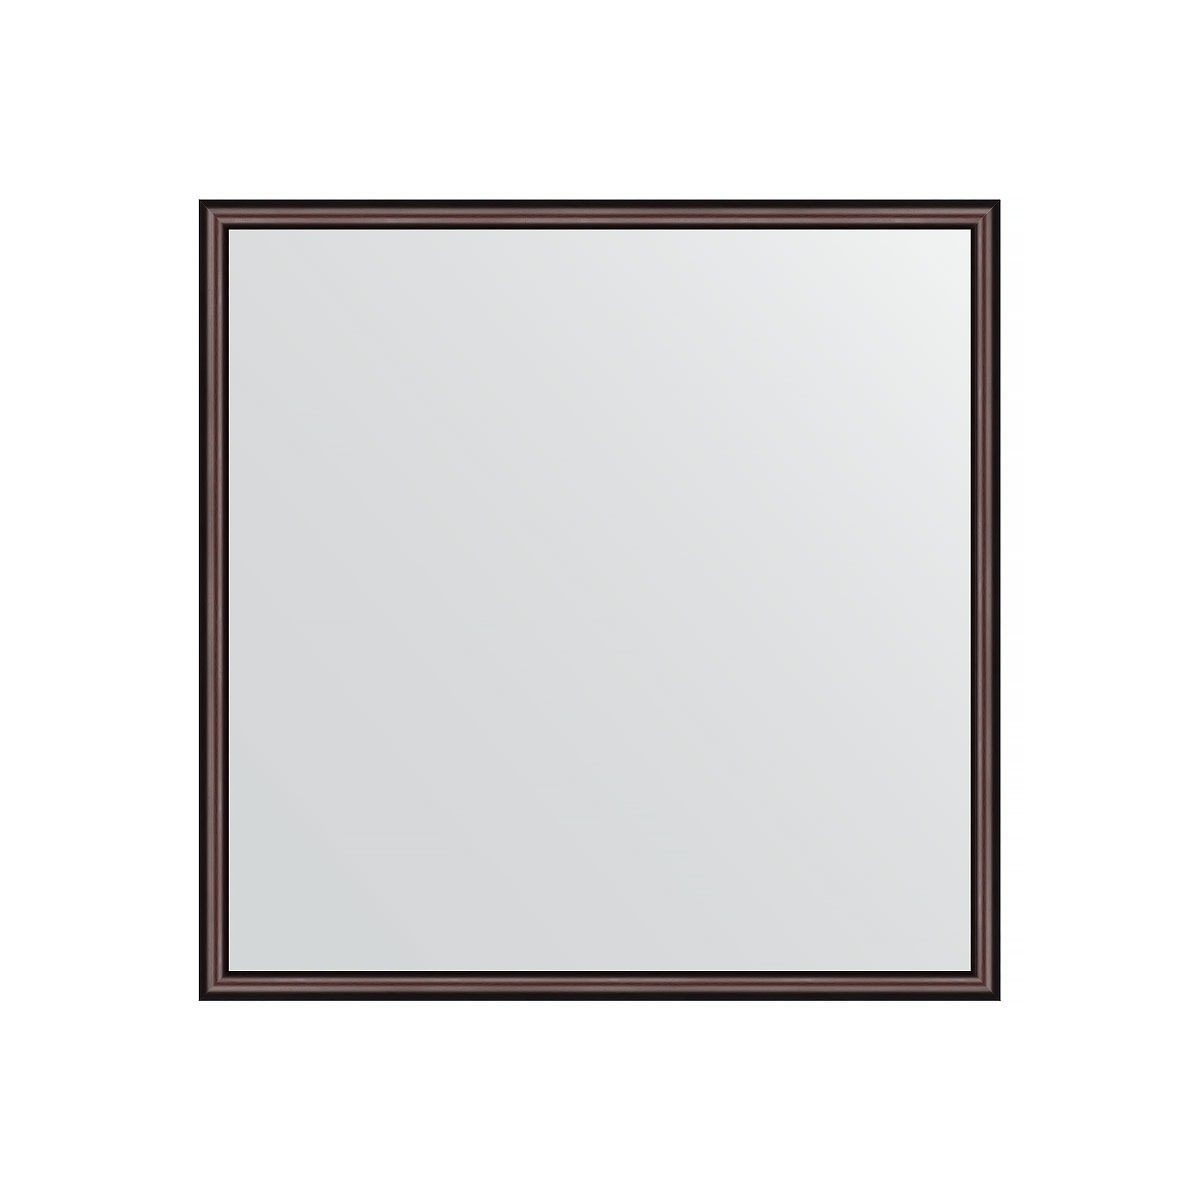 Зеркало в багетной раме Evoform махагон 22 мм 68х68 см зеркало в багетной раме evoform сосна 22 мм 68х68 см